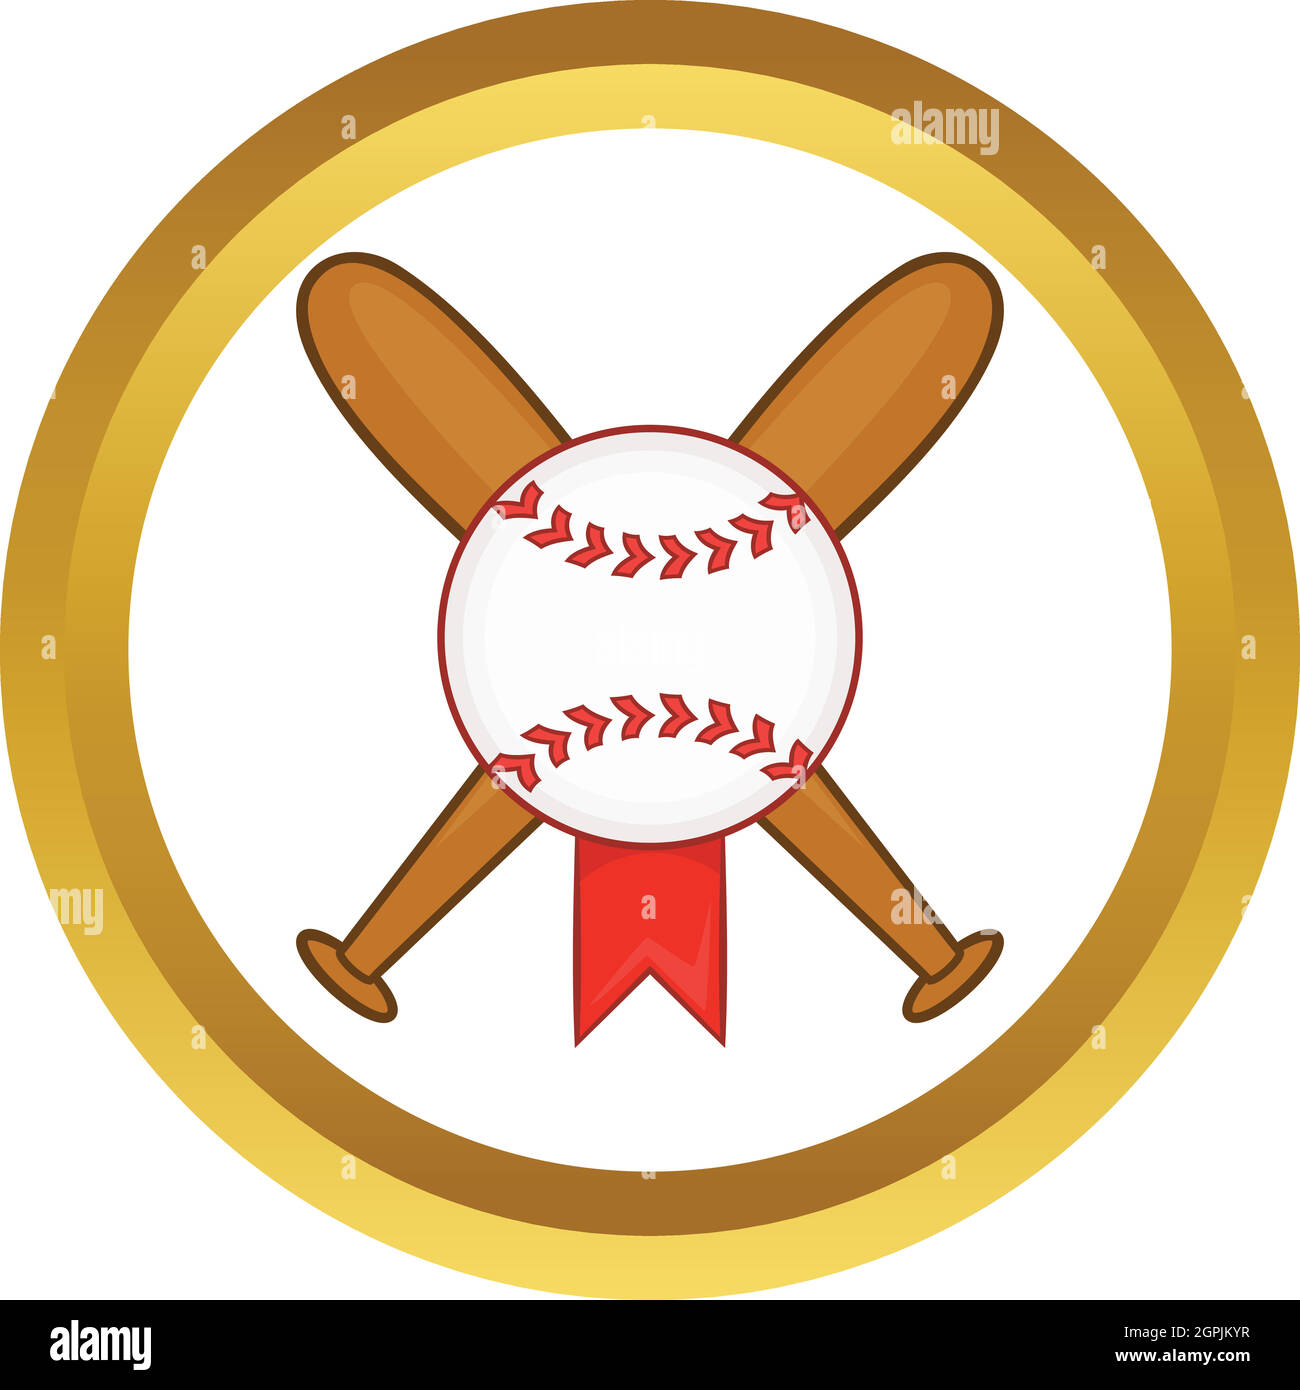 Baseball with bats vector icon Stock Vector